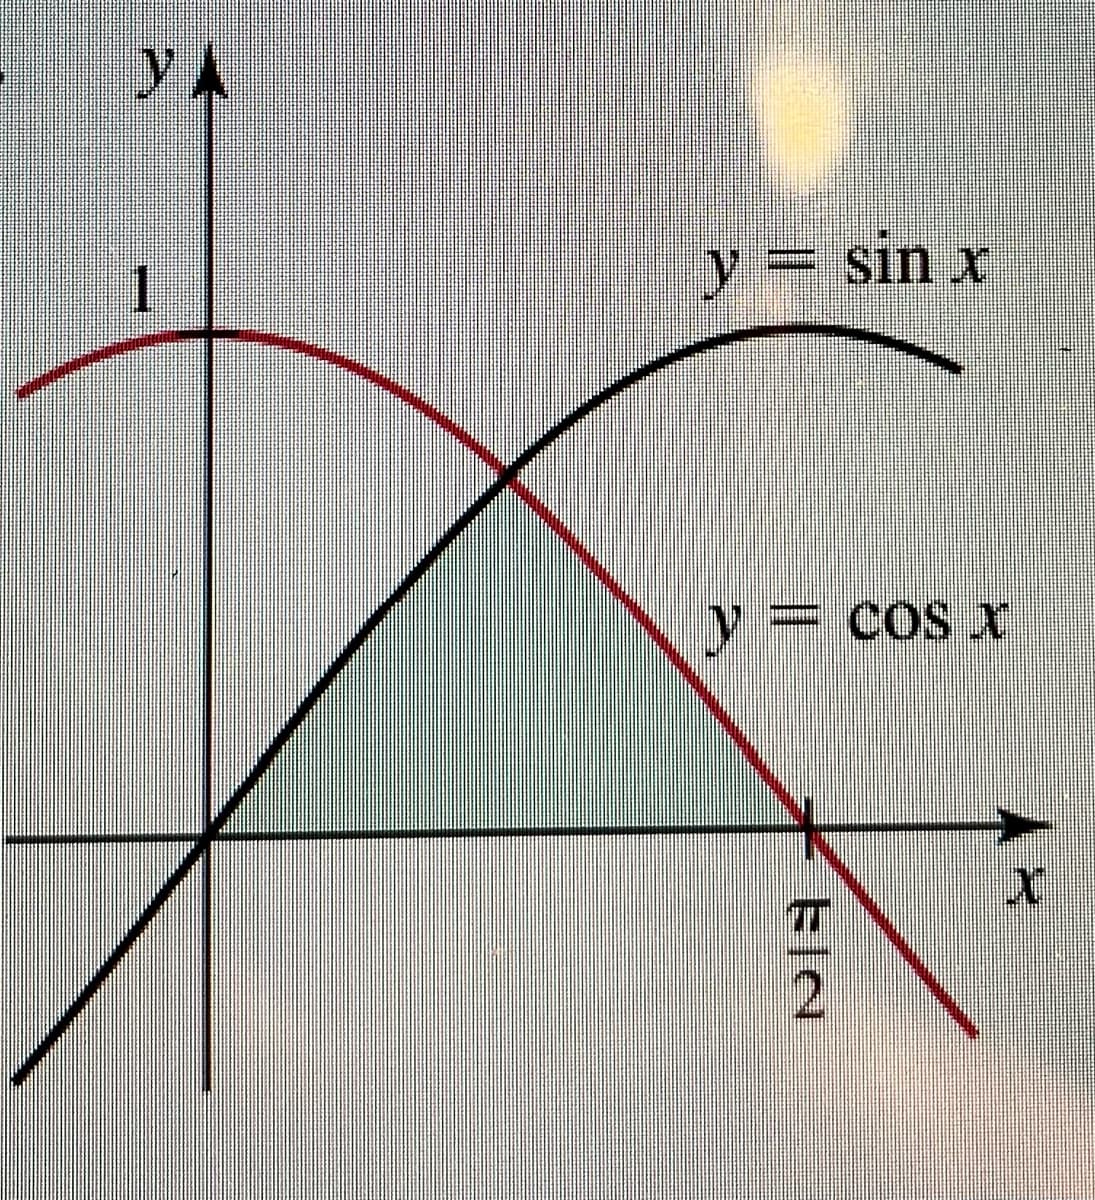 y A
y= sin x
= COS X
2.
